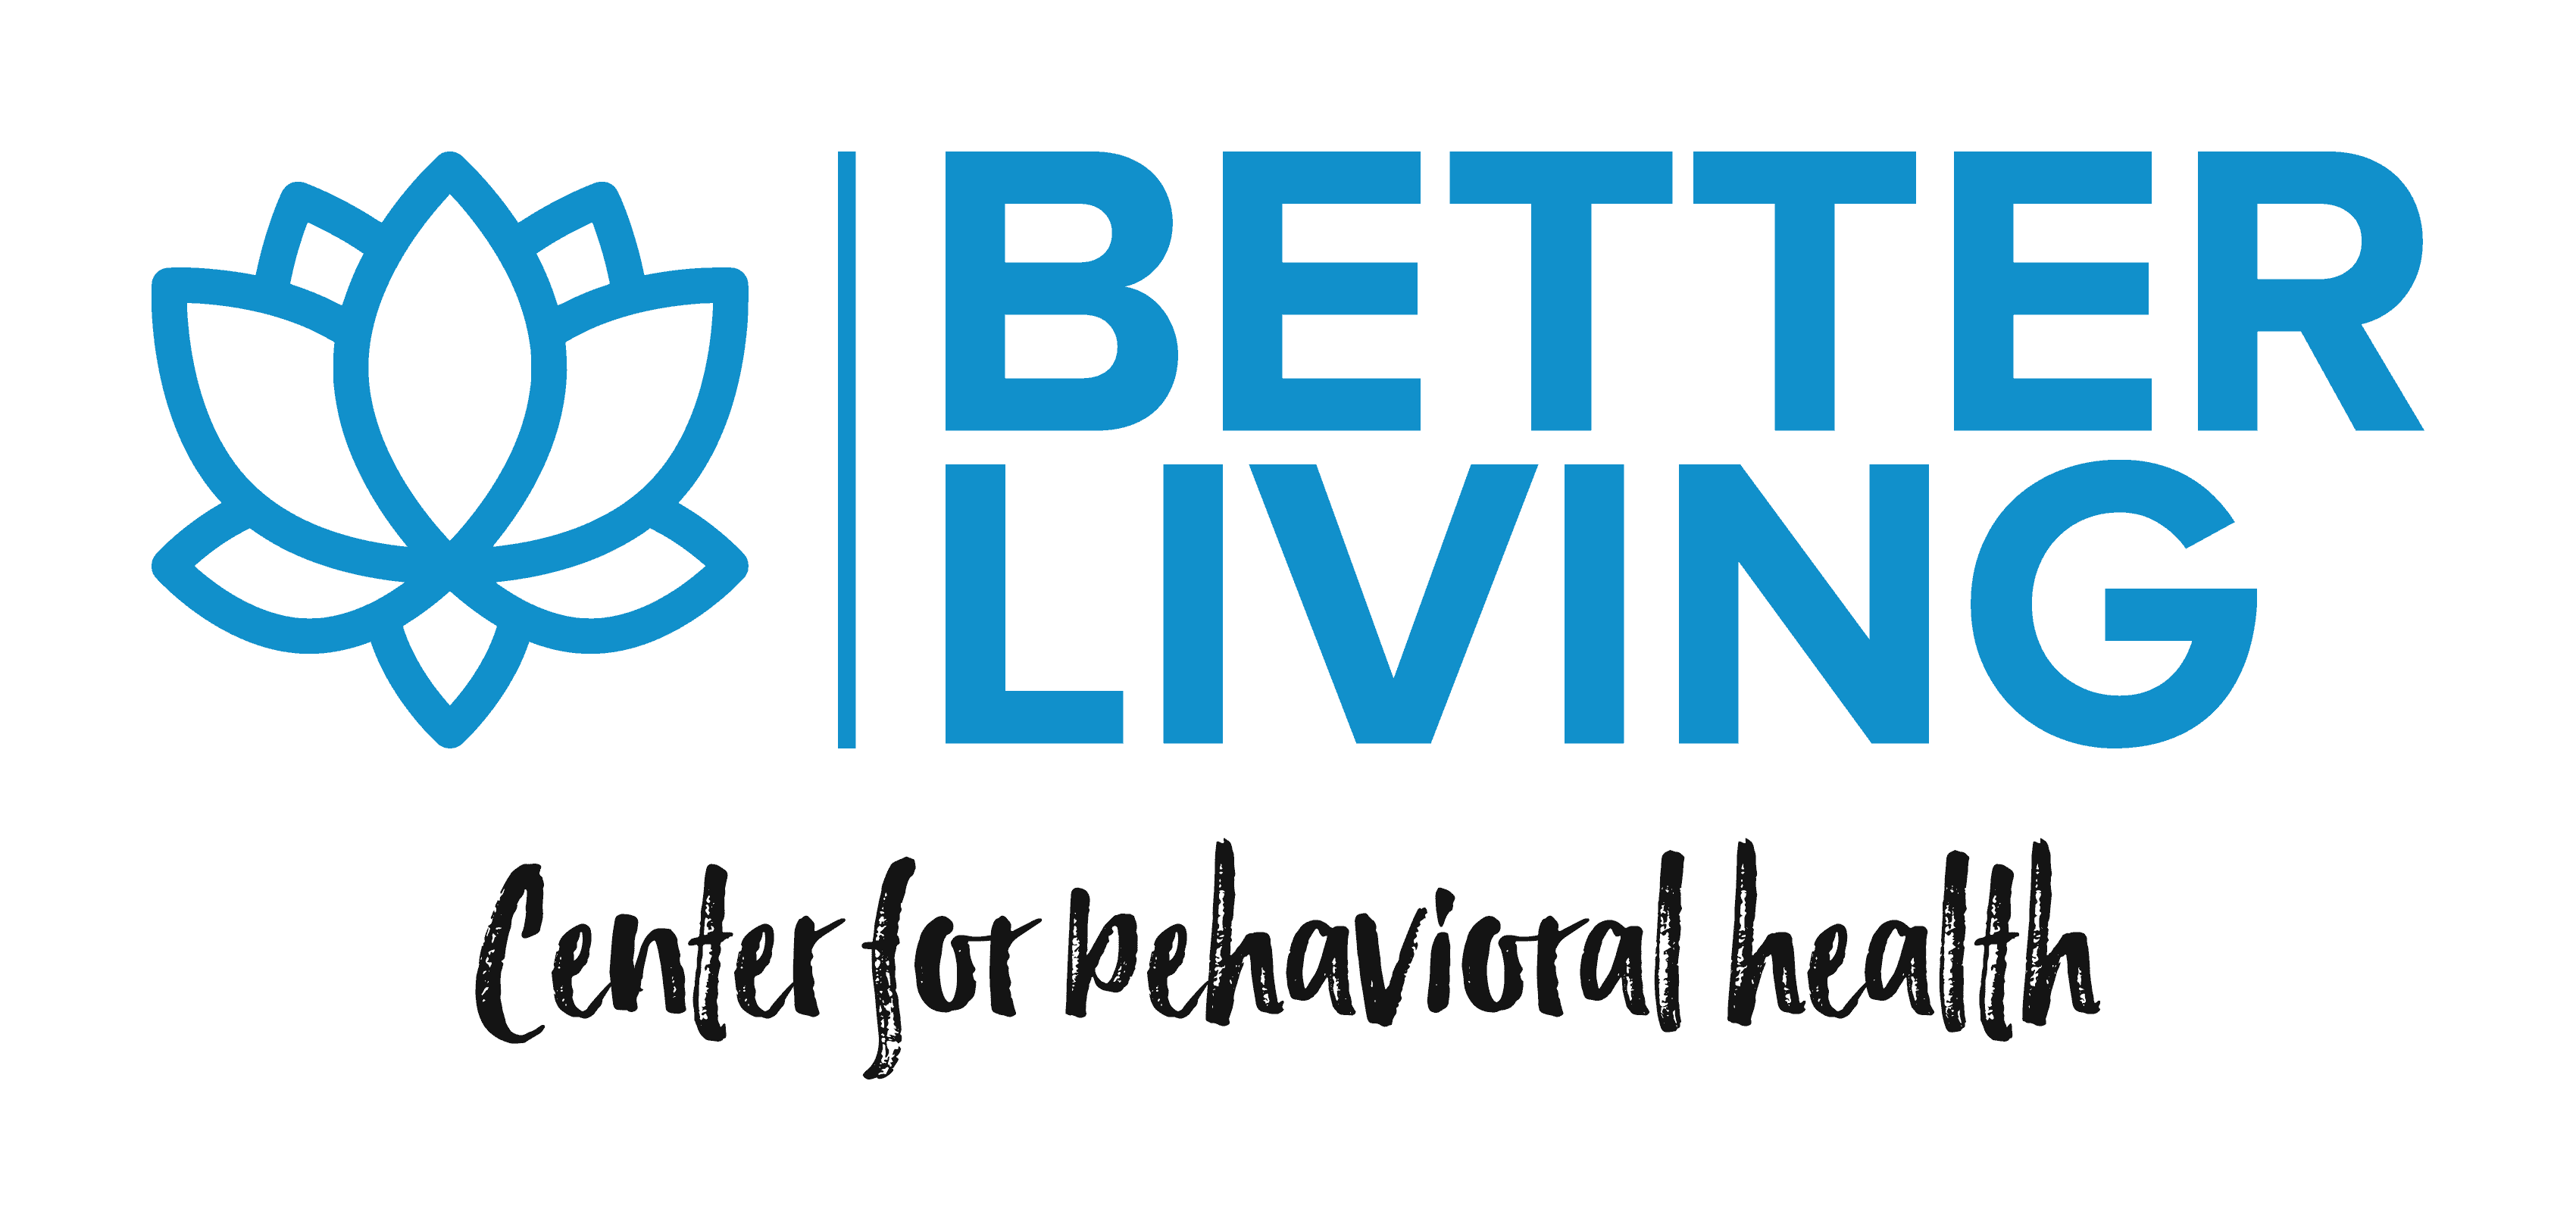 Better Living Center for Behavioral Health